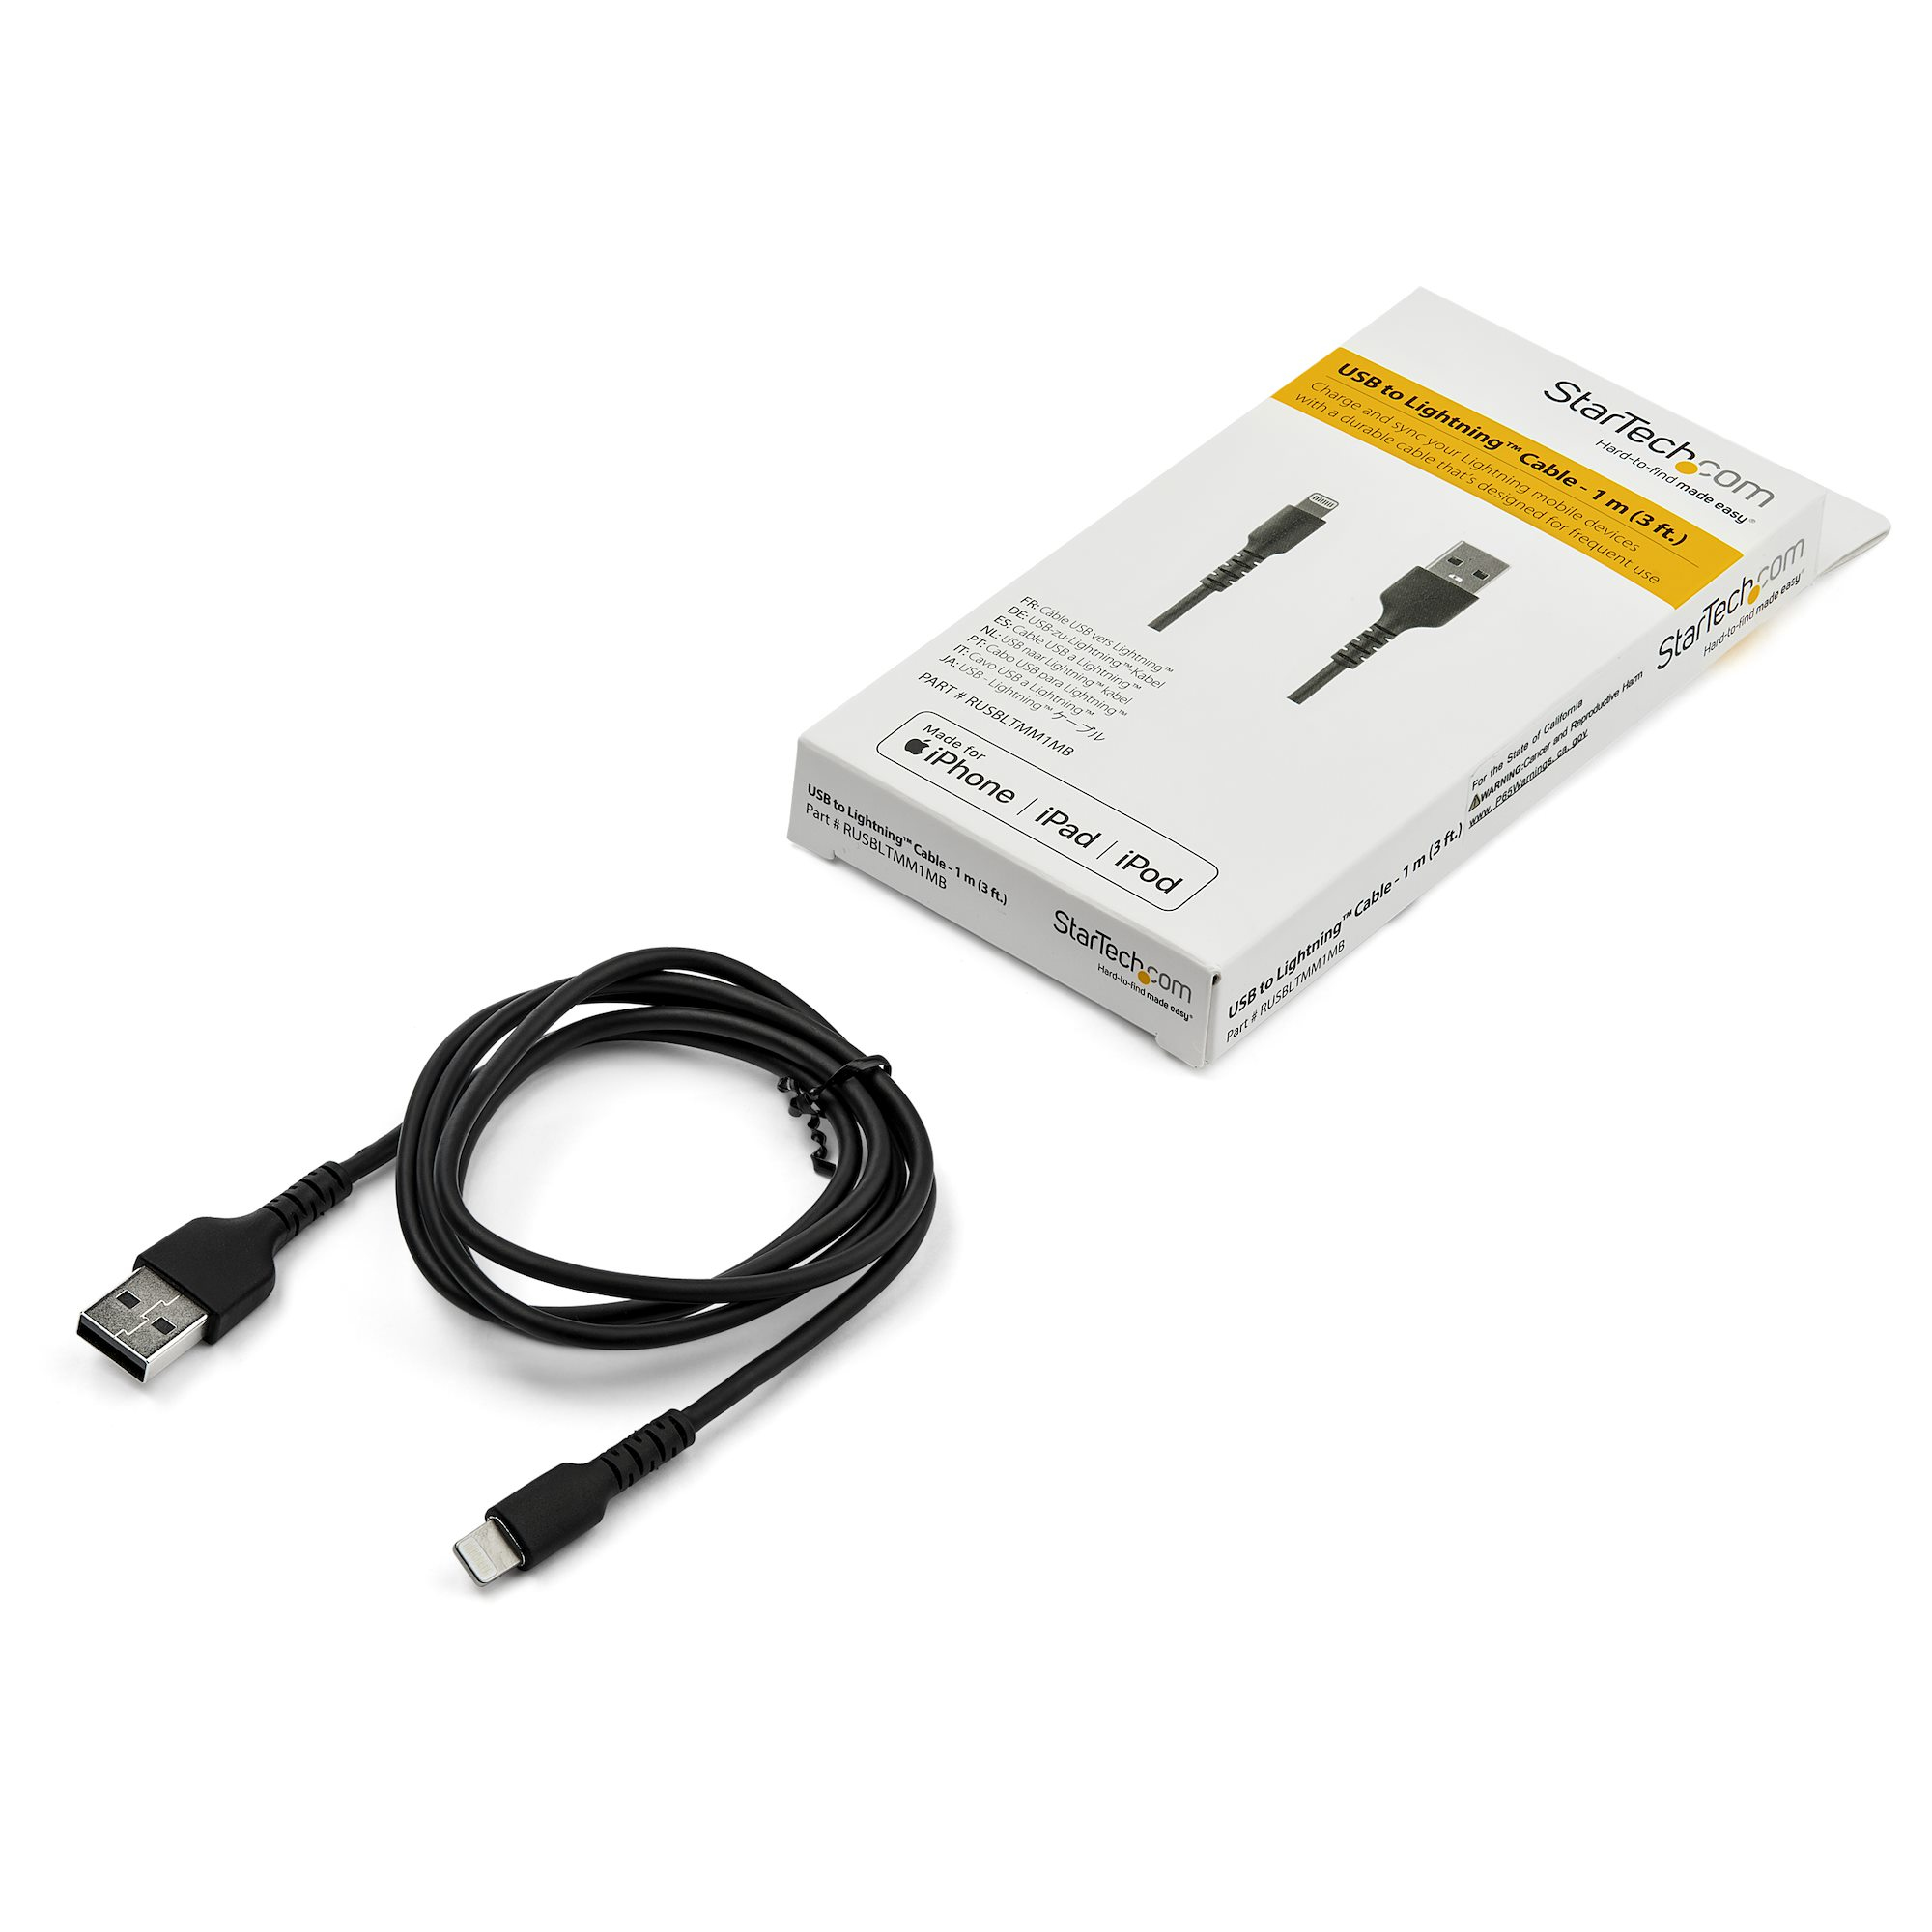 Cable USB-C vers Lightning (noir) - 2 m - Adaptateurs et câbles  StarTech.com sur